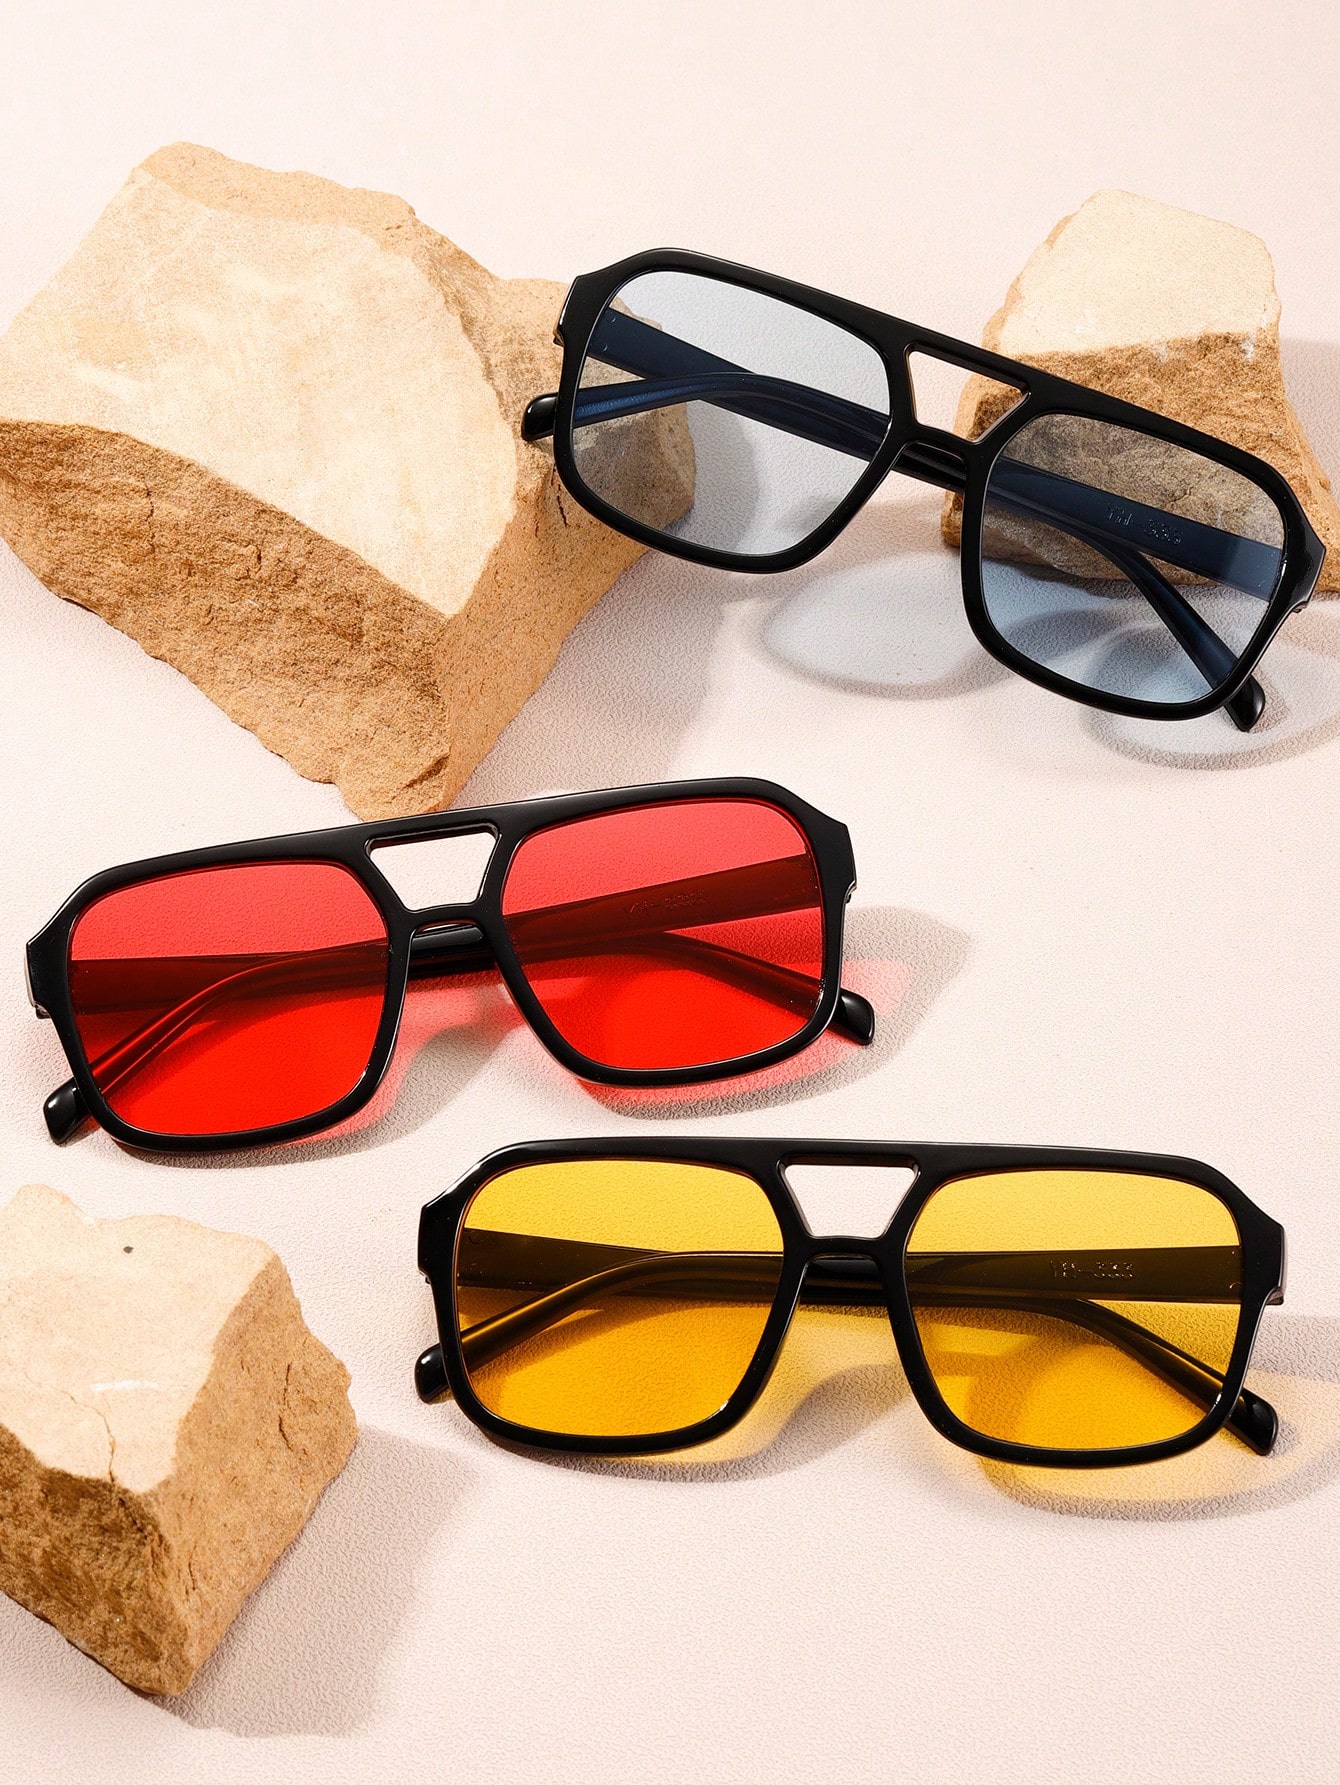 1шт унисекс квадратные солнцезащитные очки с двойным лучом 2 шт партия декоративные бумажные зажимы в корейском стиле